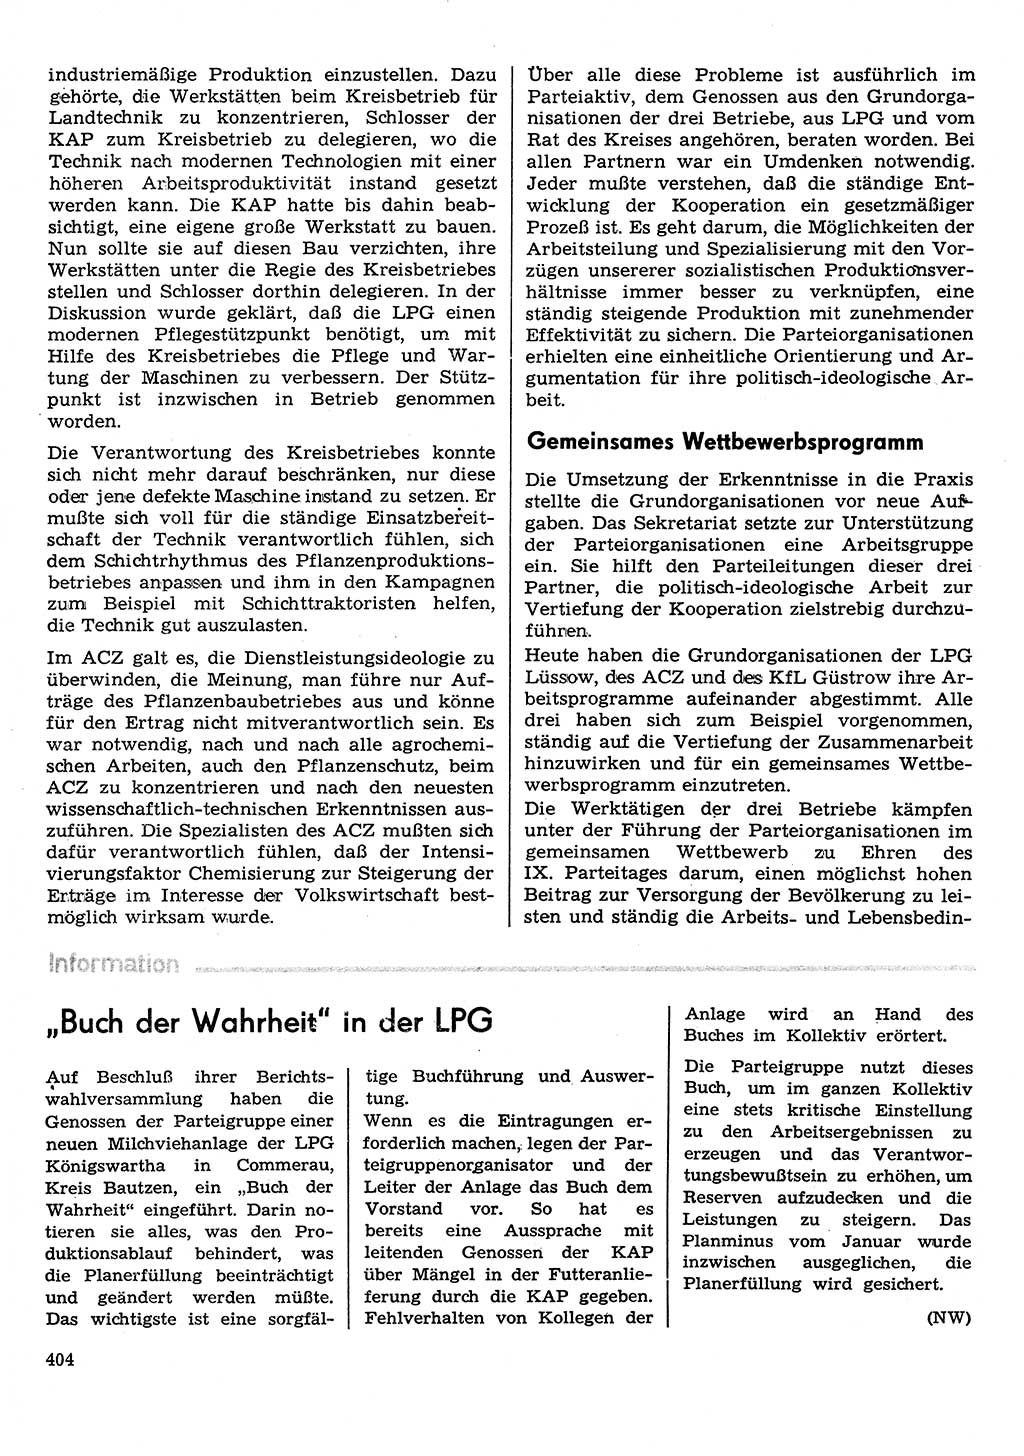 Neuer Weg (NW), Organ des Zentralkomitees (ZK) der SED (Sozialistische Einheitspartei Deutschlands) für Fragen des Parteilebens, 31. Jahrgang [Deutsche Demokratische Republik (DDR)] 1976, Seite 404 (NW ZK SED DDR 1976, S. 404)